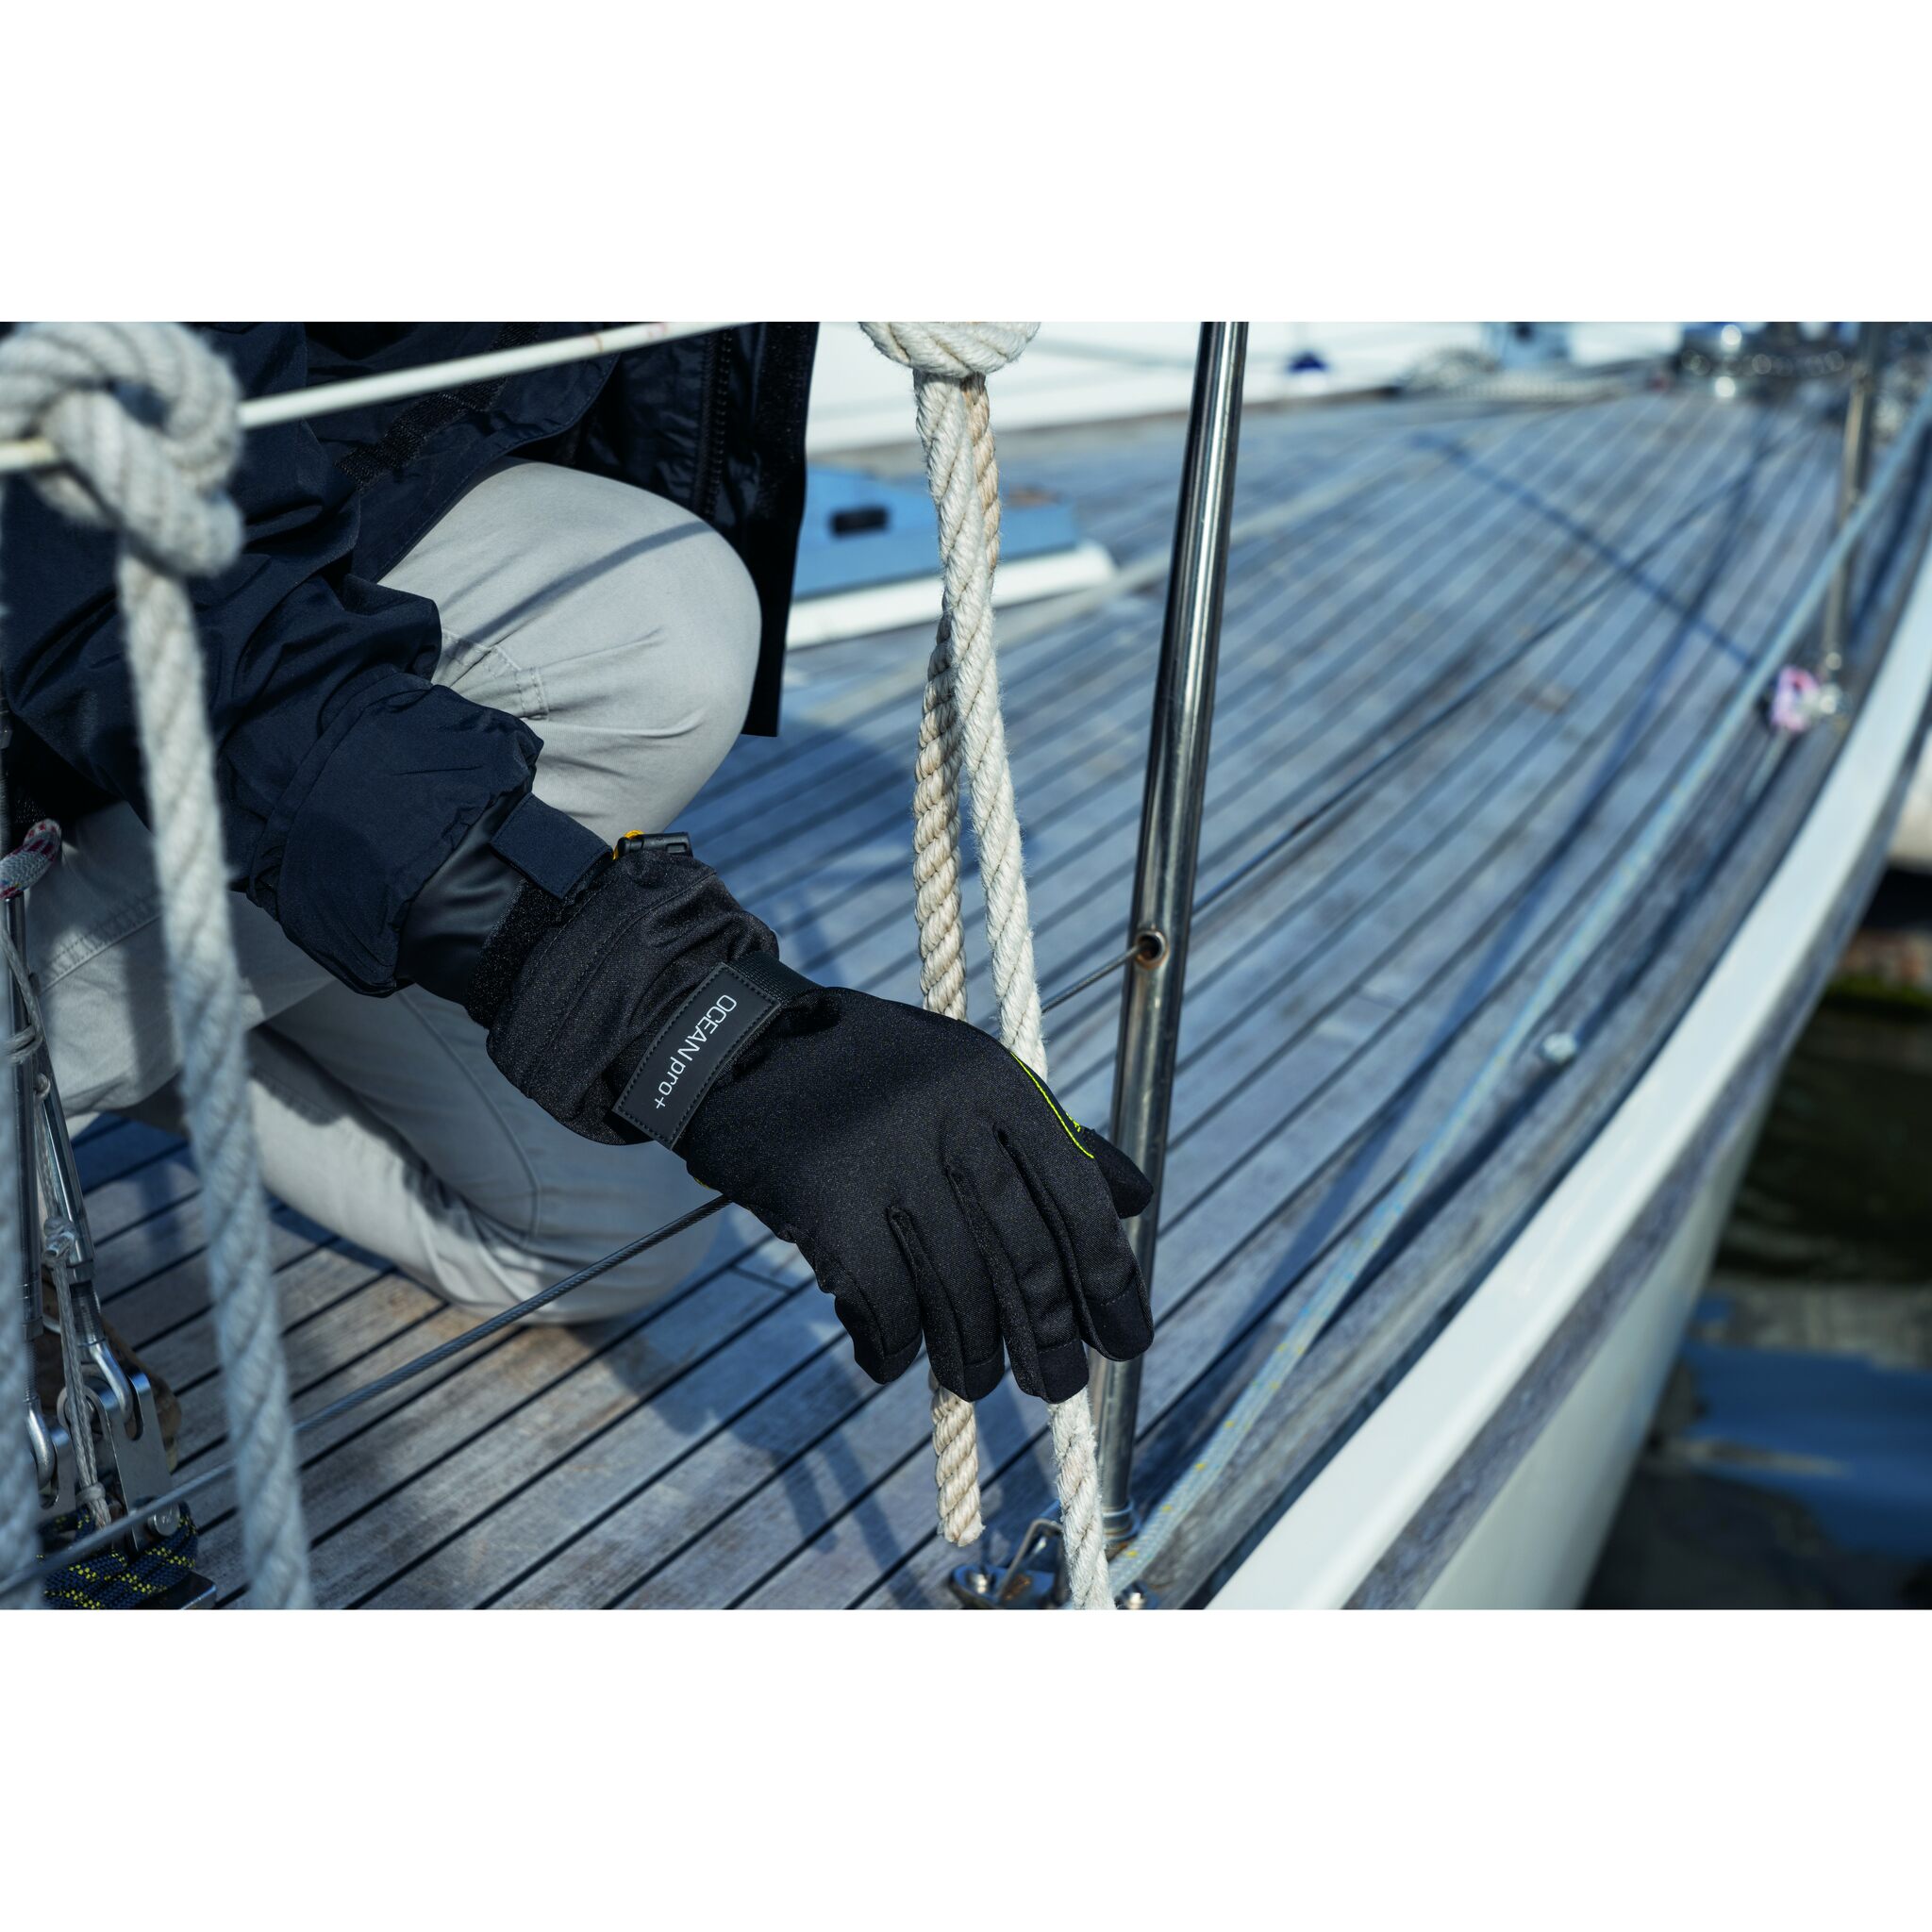 OCEAN pro winter glove